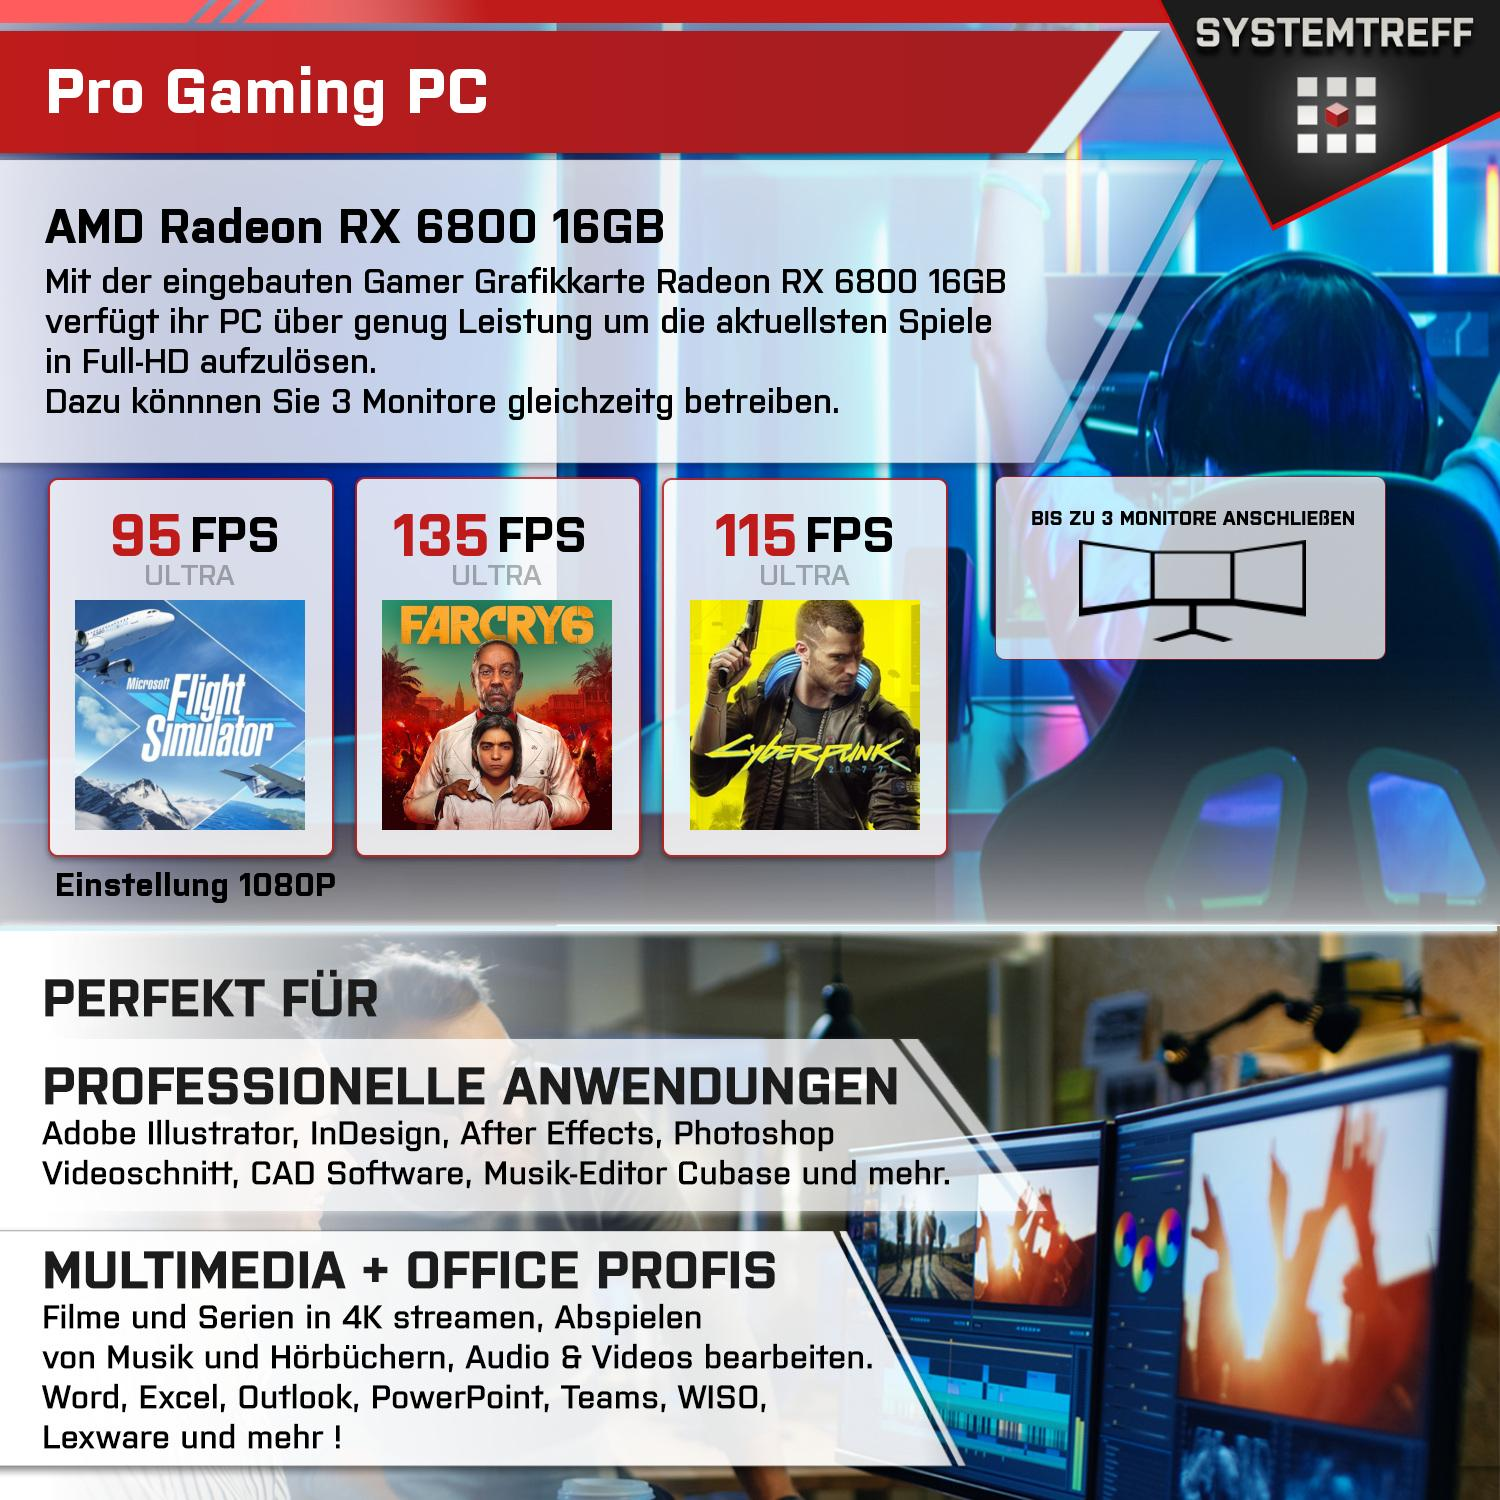 SYSTEMTREFF Gaming Komplett AMD Ryzen Radeon mSSD, PC 16 16GB GB Prozessor, 7800X3D, Komplett GB 1000 RX GB GDDR6, 32 7 6800 7800X3D AMD RAM, mit